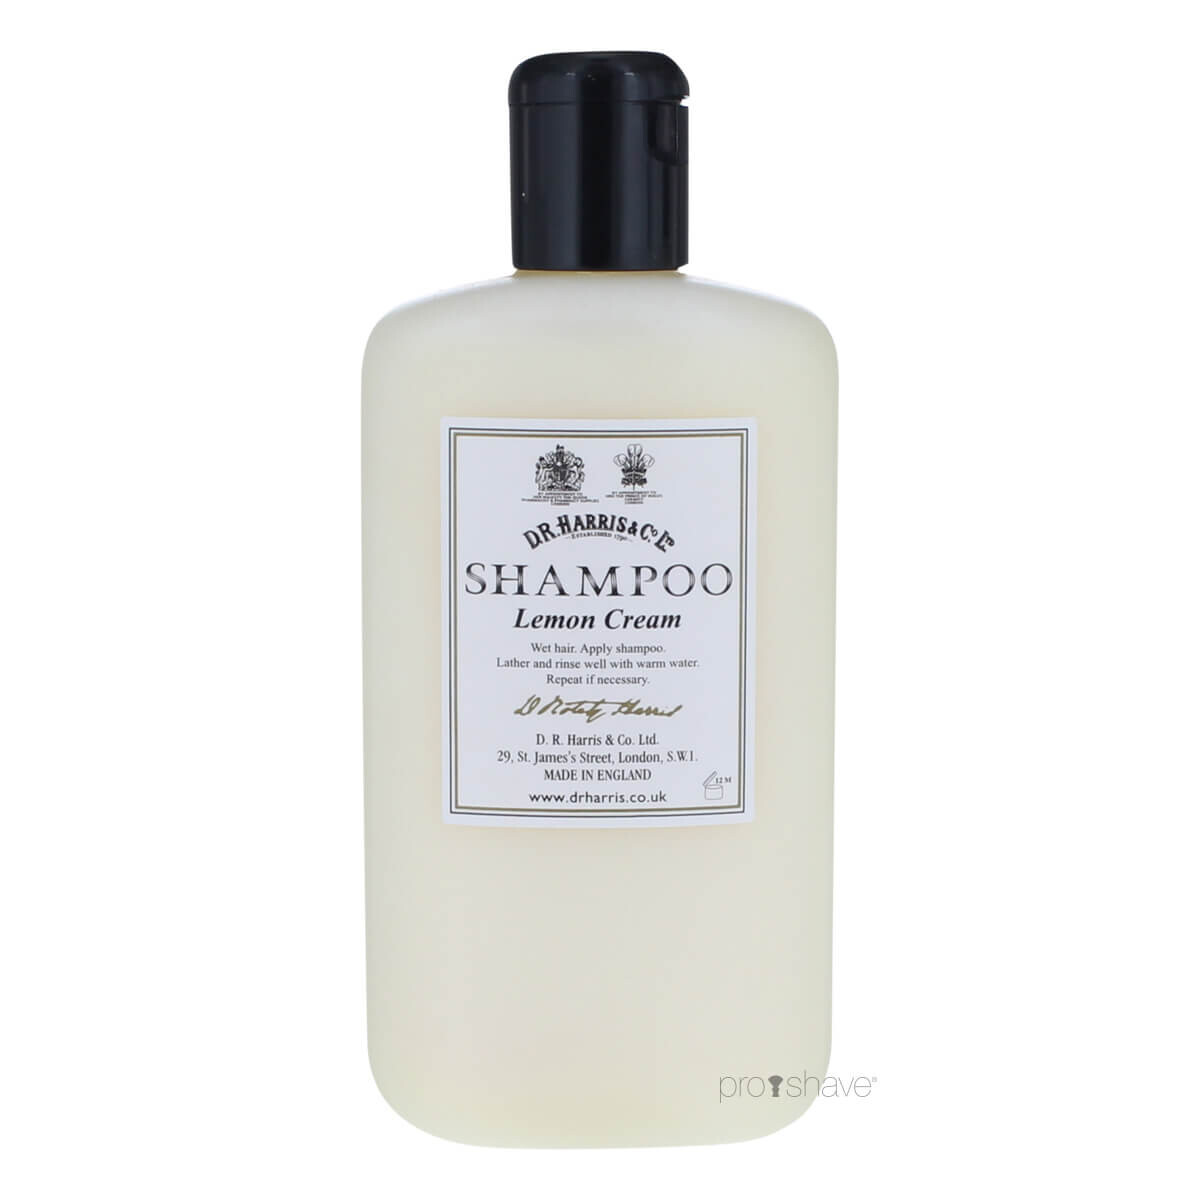 Billede af D.R. Harris Lemon Cream Shampoo, 250 ml.